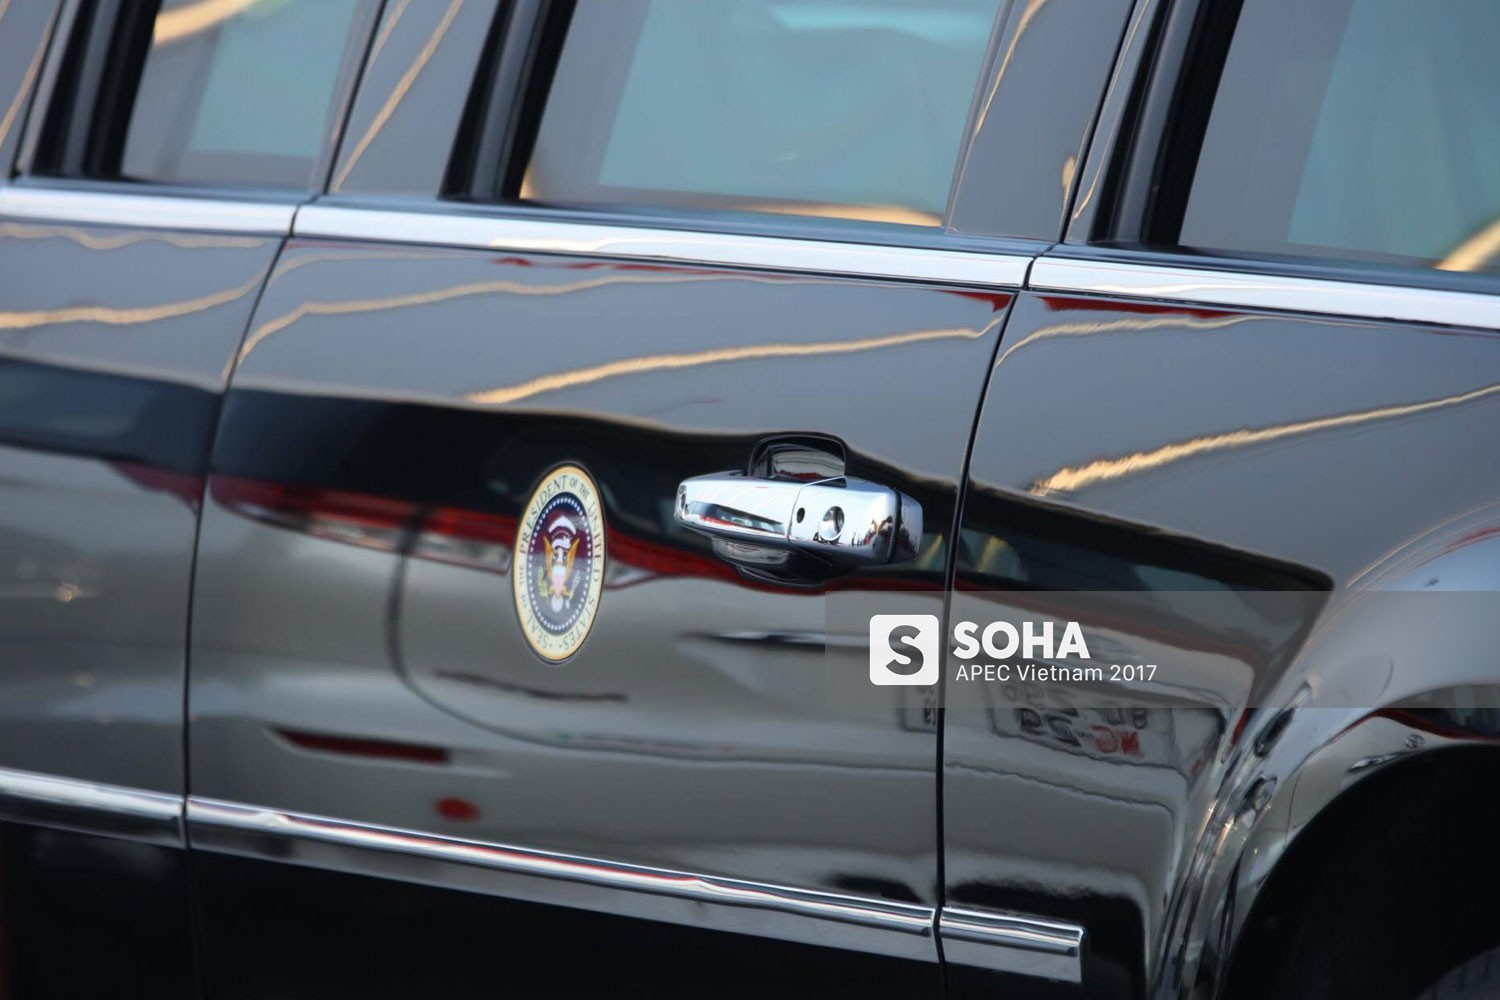 [ẢNH] Cận cảnh từng chi tiết siêu xe Quái thú của Tổng thống Mỹ Donald Trump tại Nội Bài - Ảnh 3.